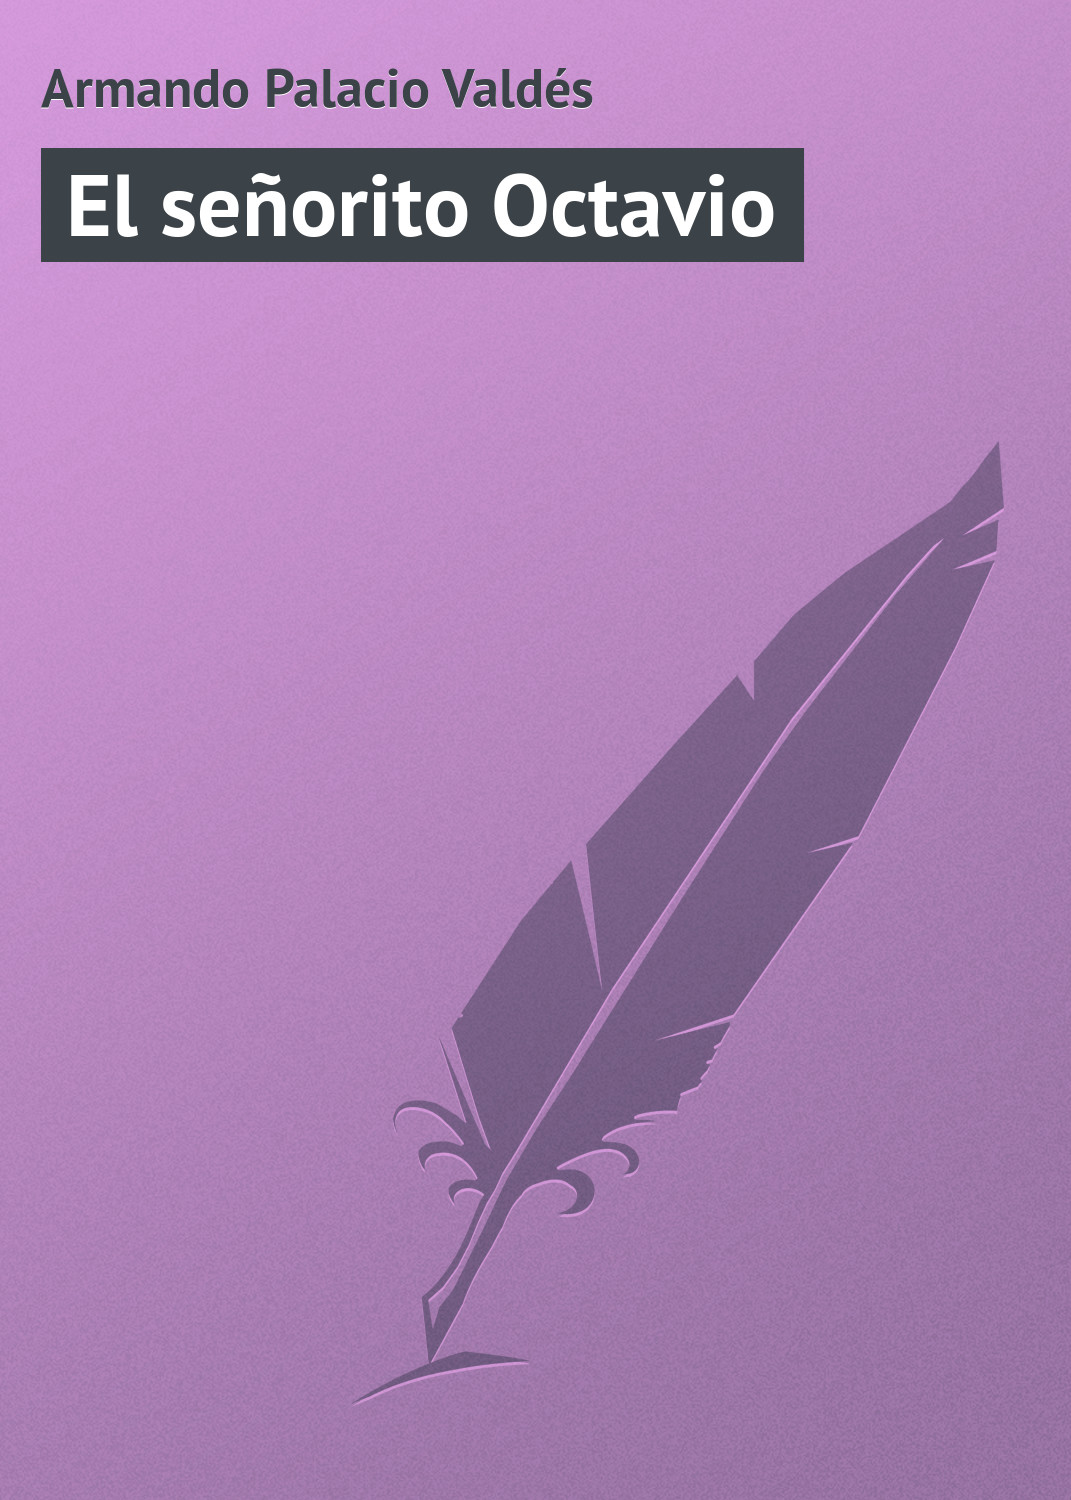 Книга El señorito Octavio из серии , созданная Armando Palacio, может относится к жанру Зарубежная старинная литература, Зарубежная классика. Стоимость электронной книги El señorito Octavio с идентификатором 21107758 составляет 5.99 руб.